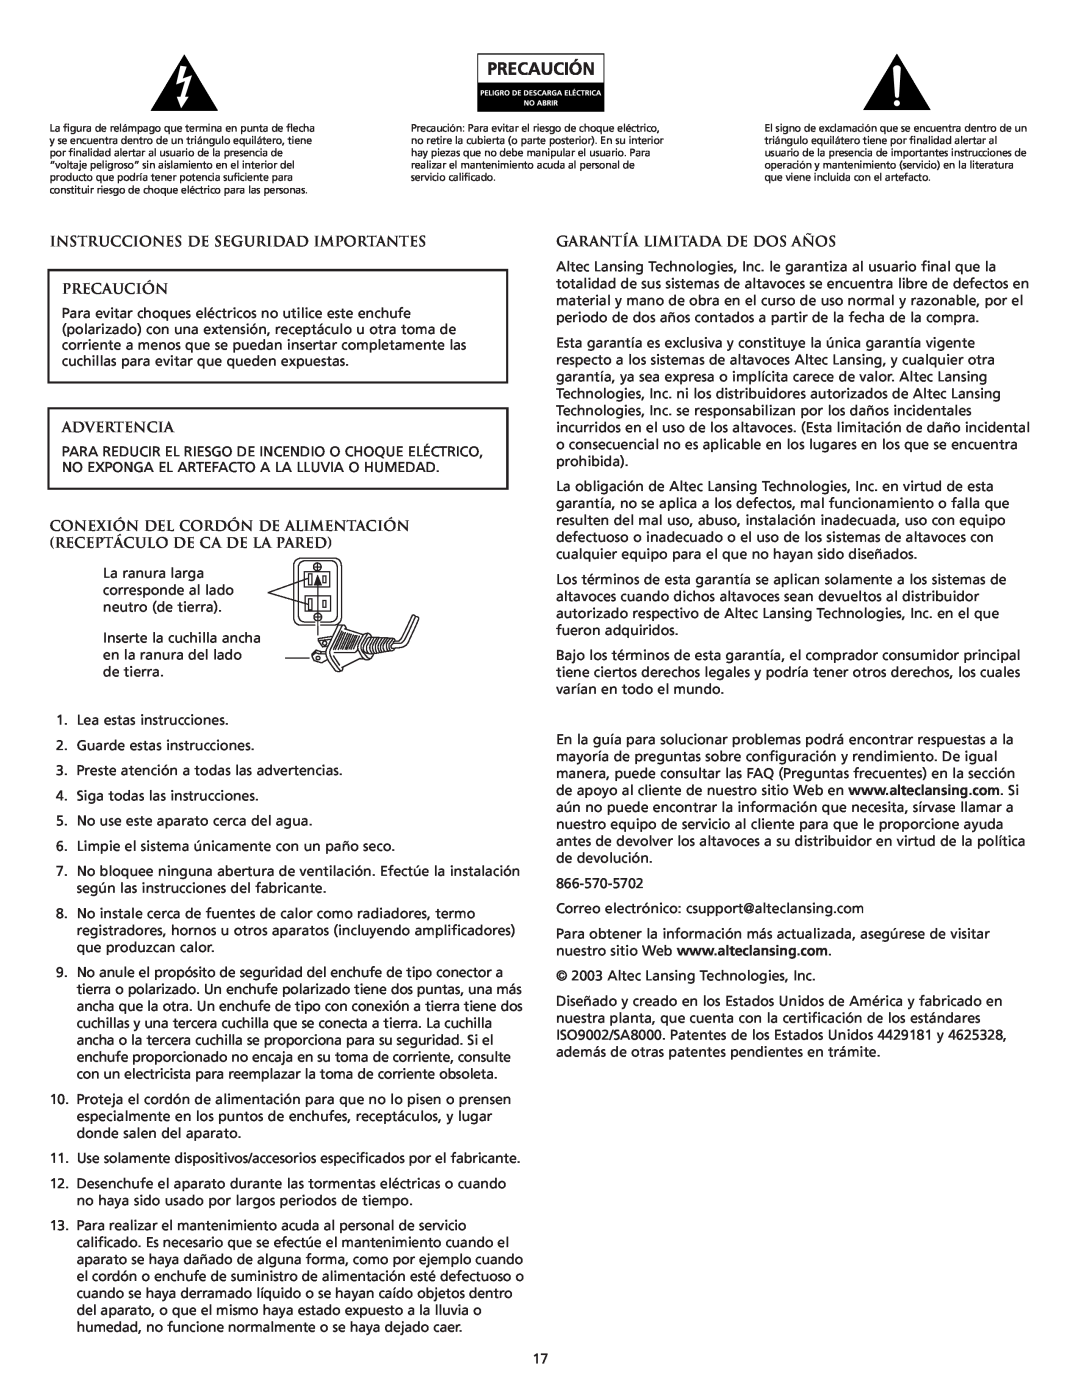 Altec Lansing FX6021 manual Instrucciones De Seguridad Importantes Precaución, Advertencia, Garantía Limitada De Dos Años 